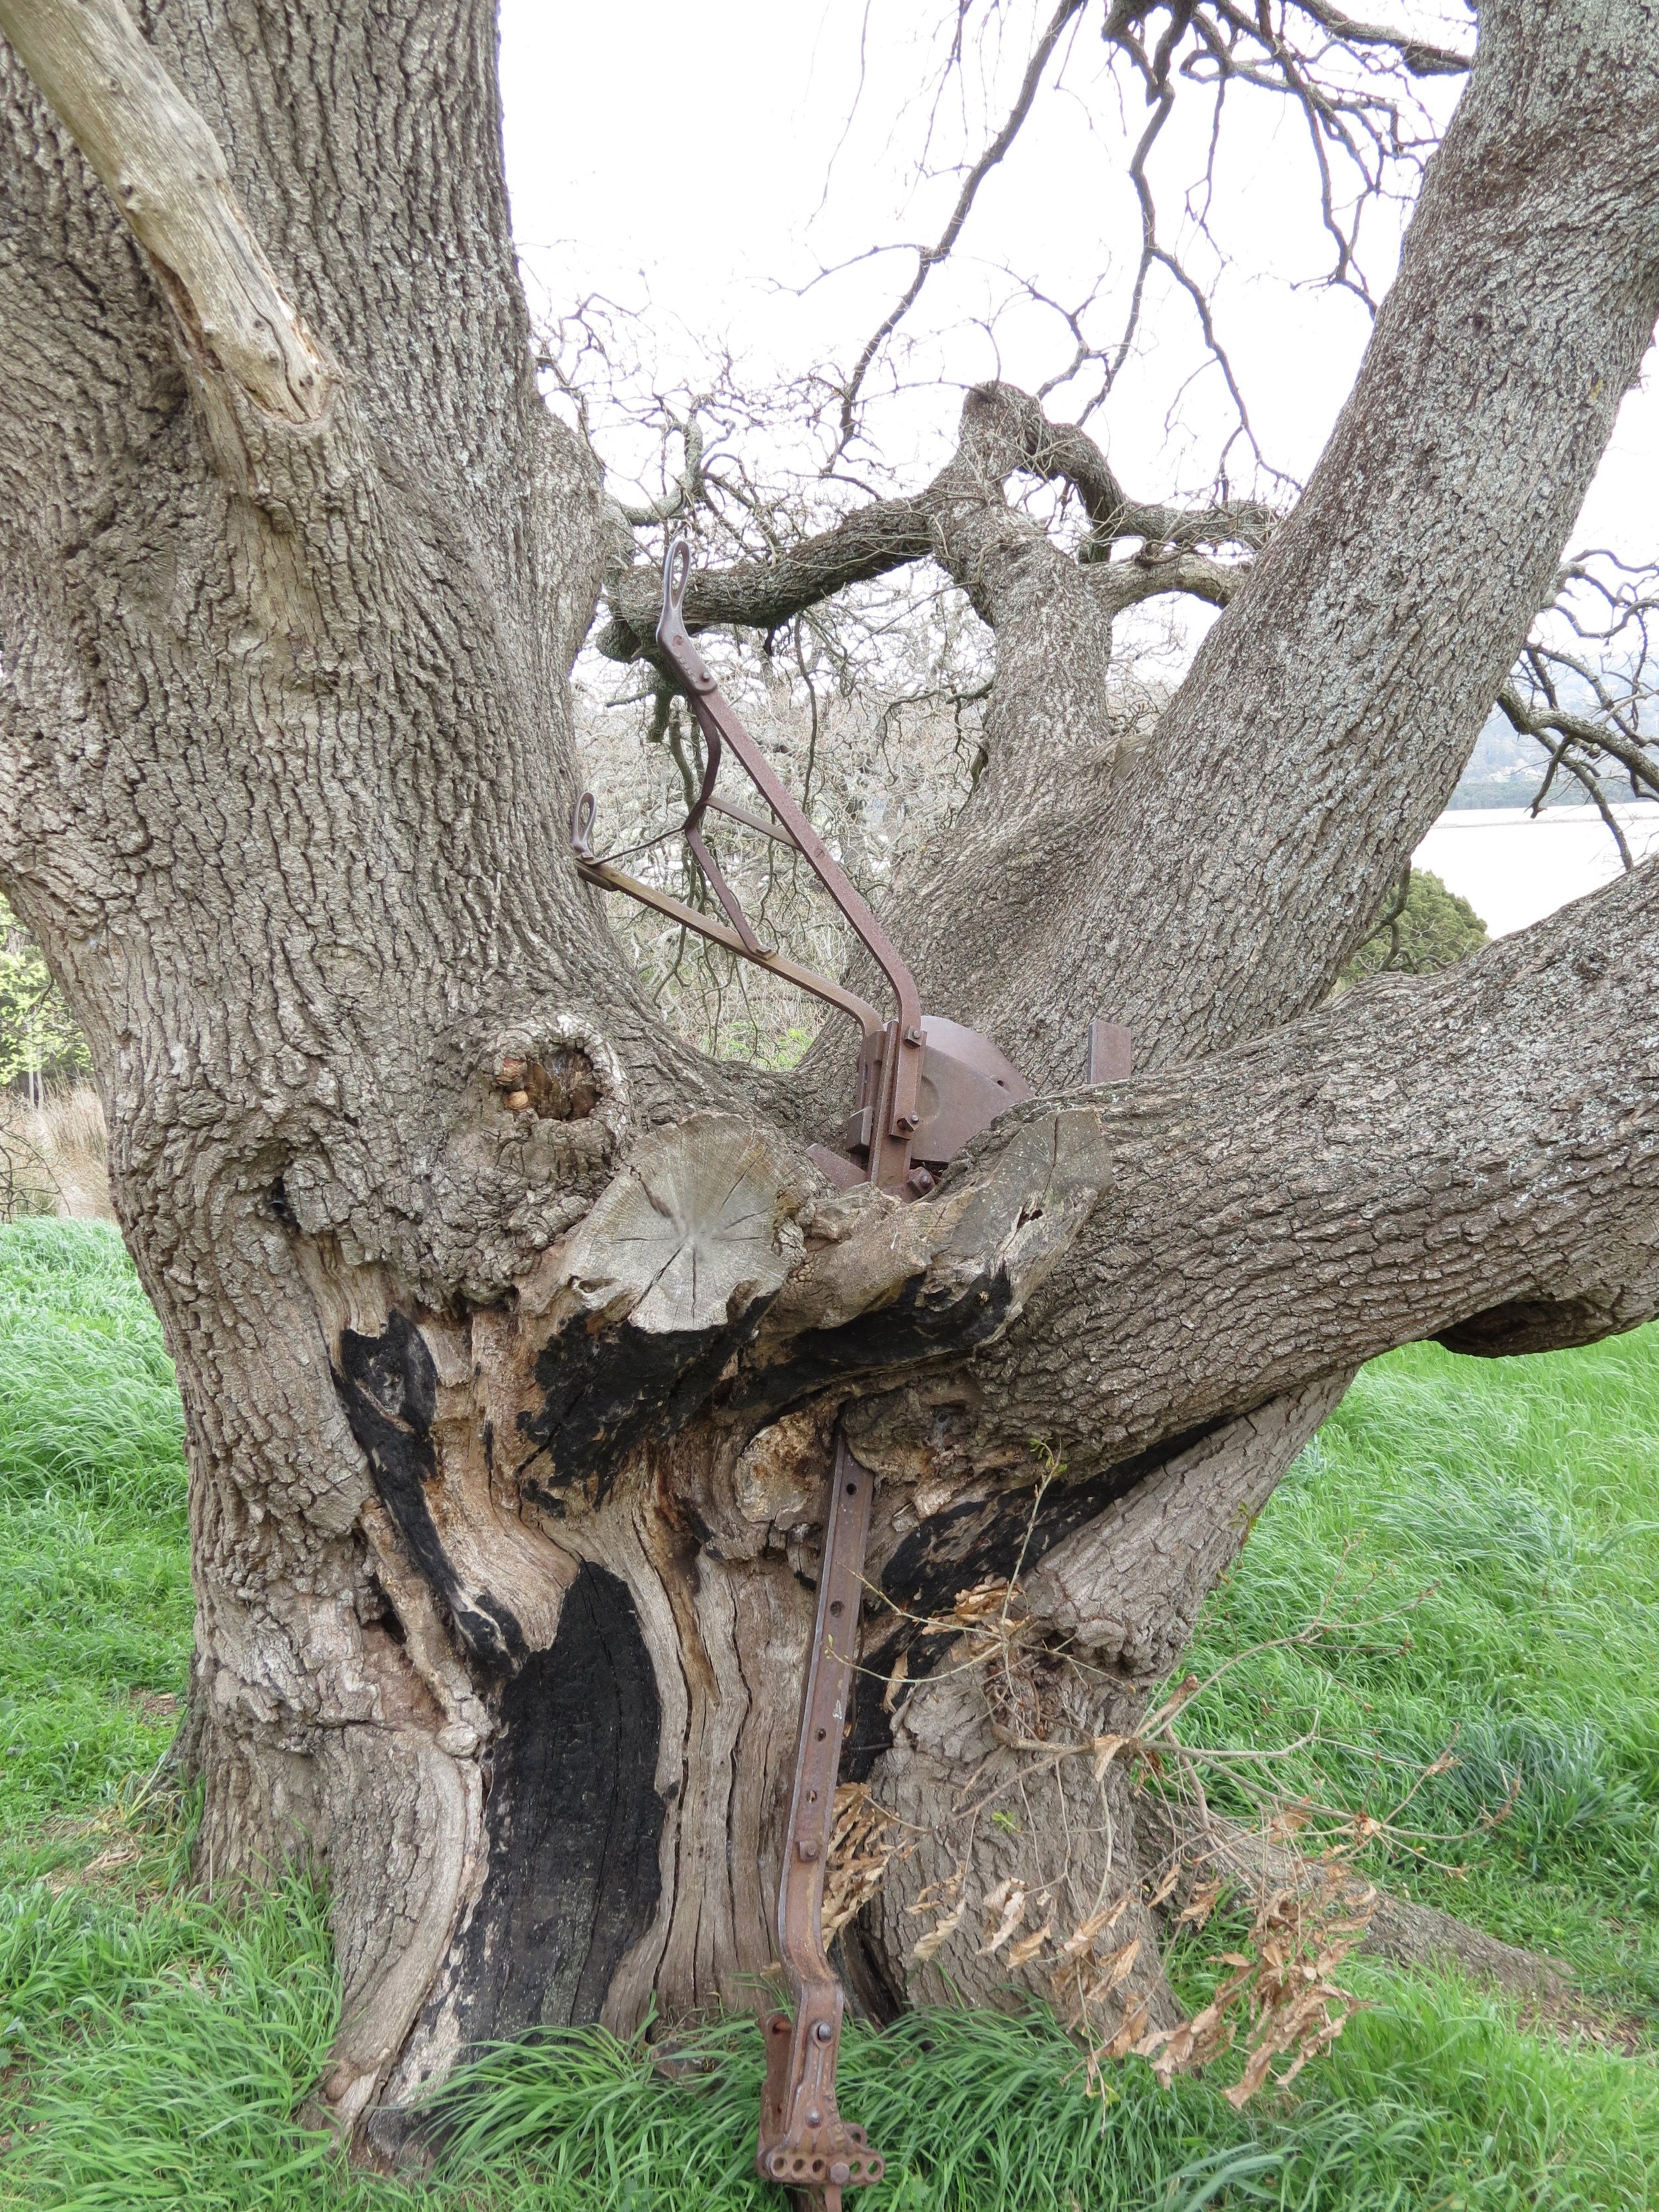 Plow embedded in an oak tree